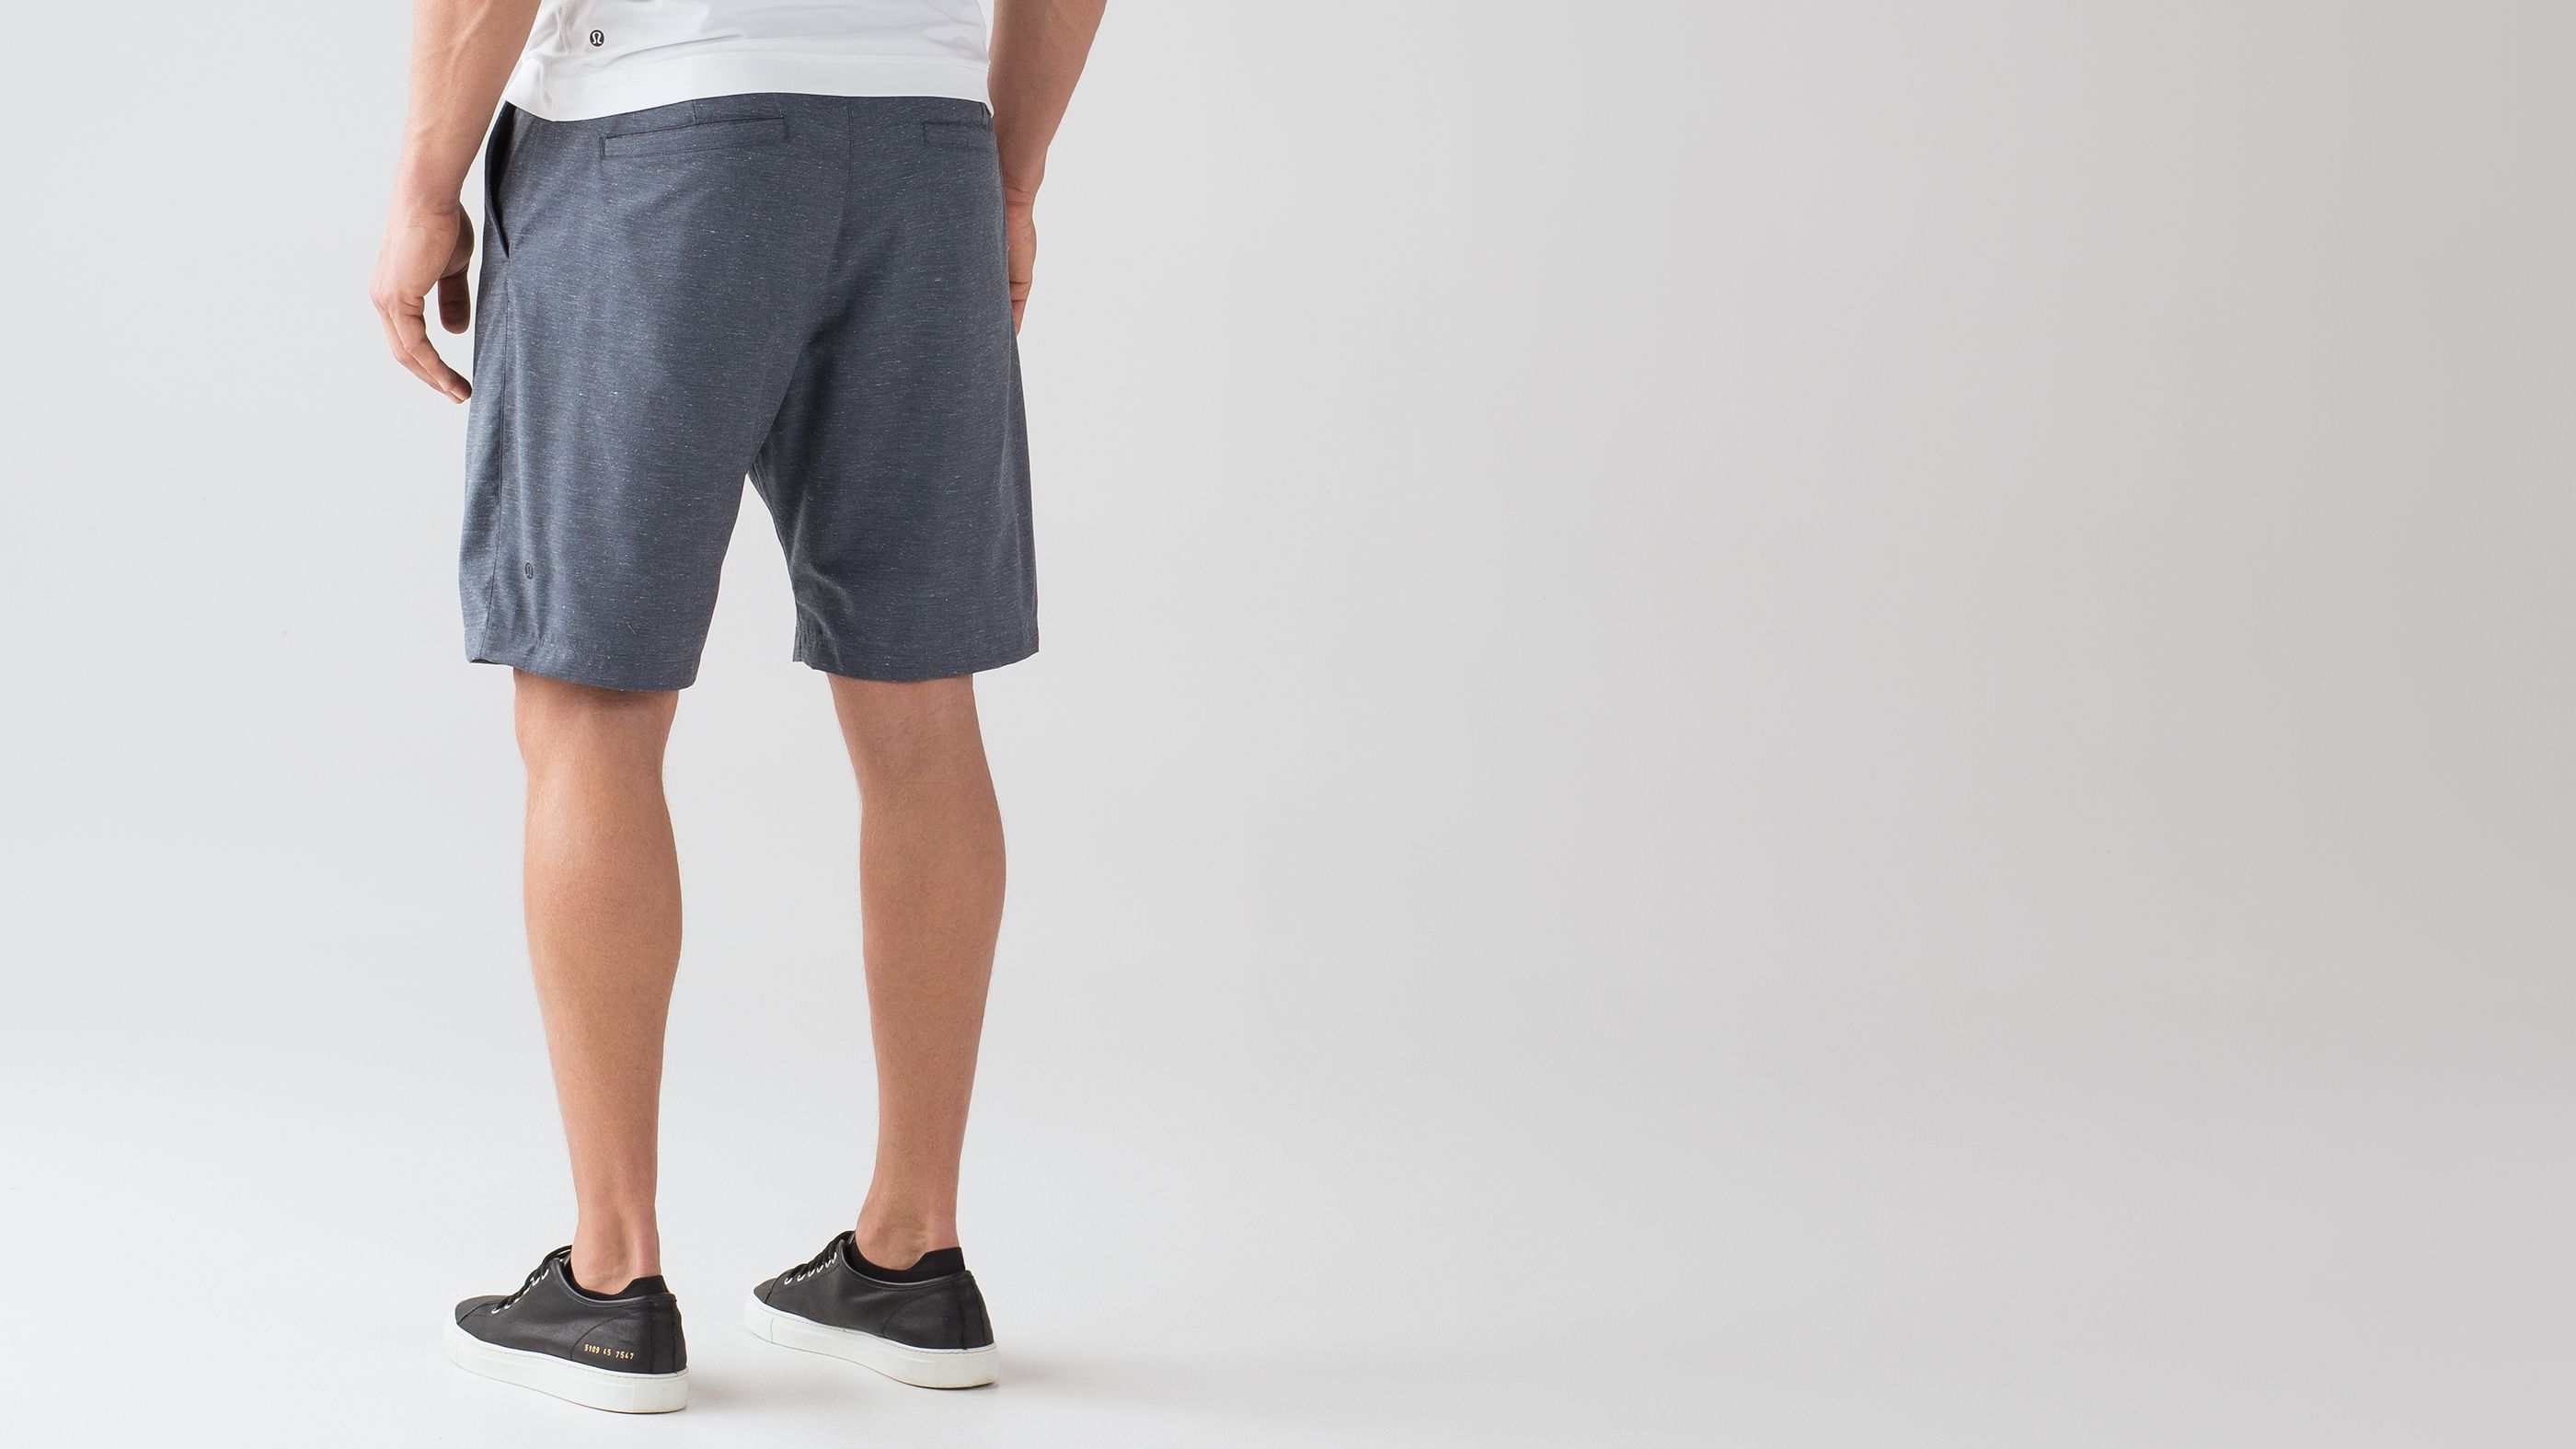 lululemon core shorts